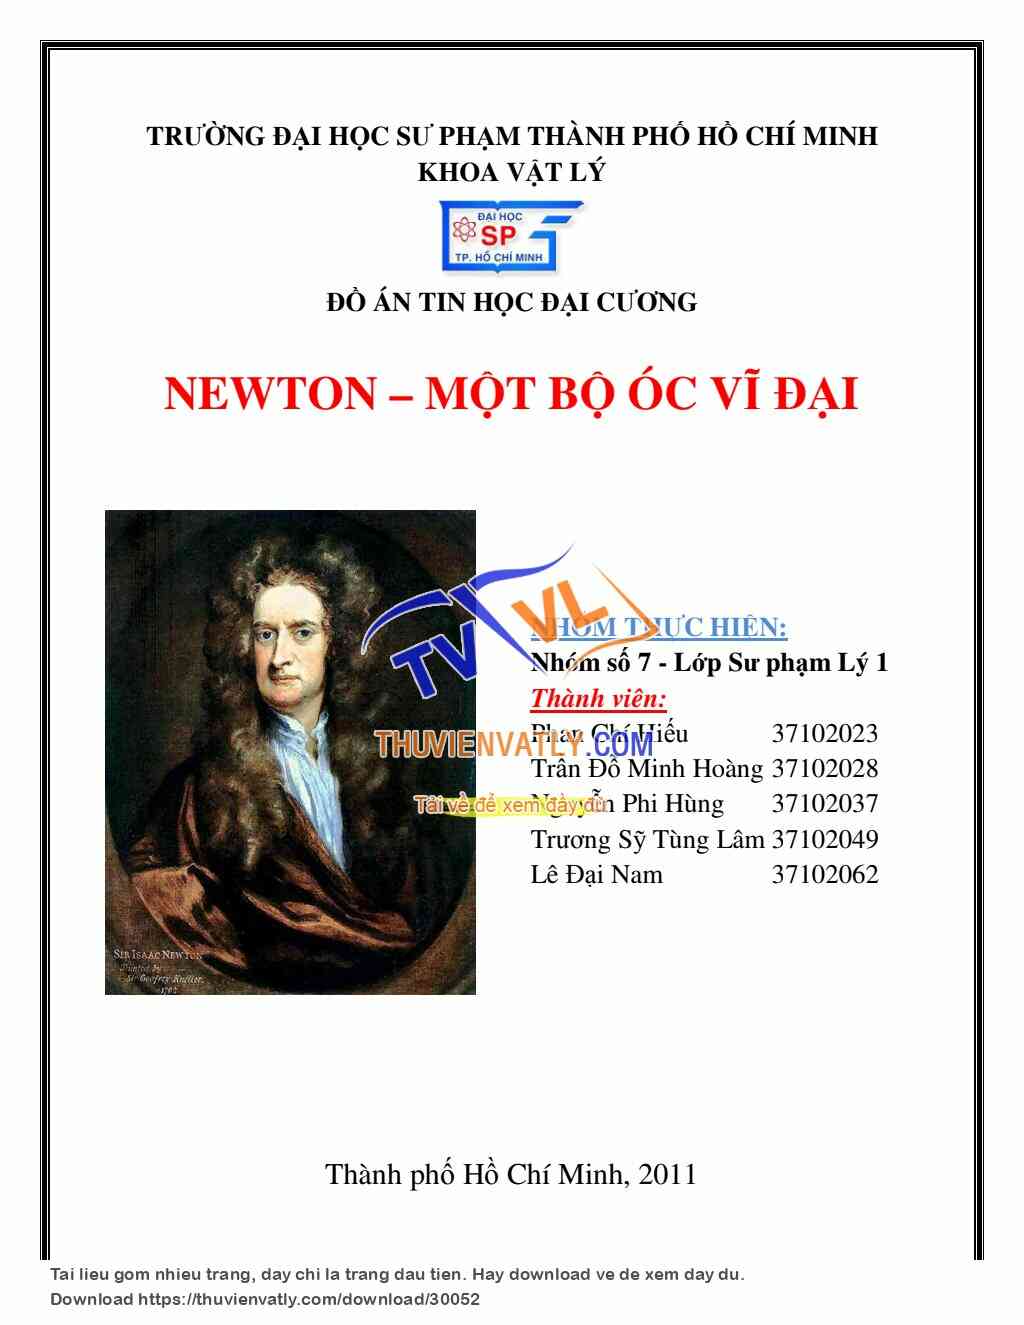 Newton - Bộ óc vĩ đại